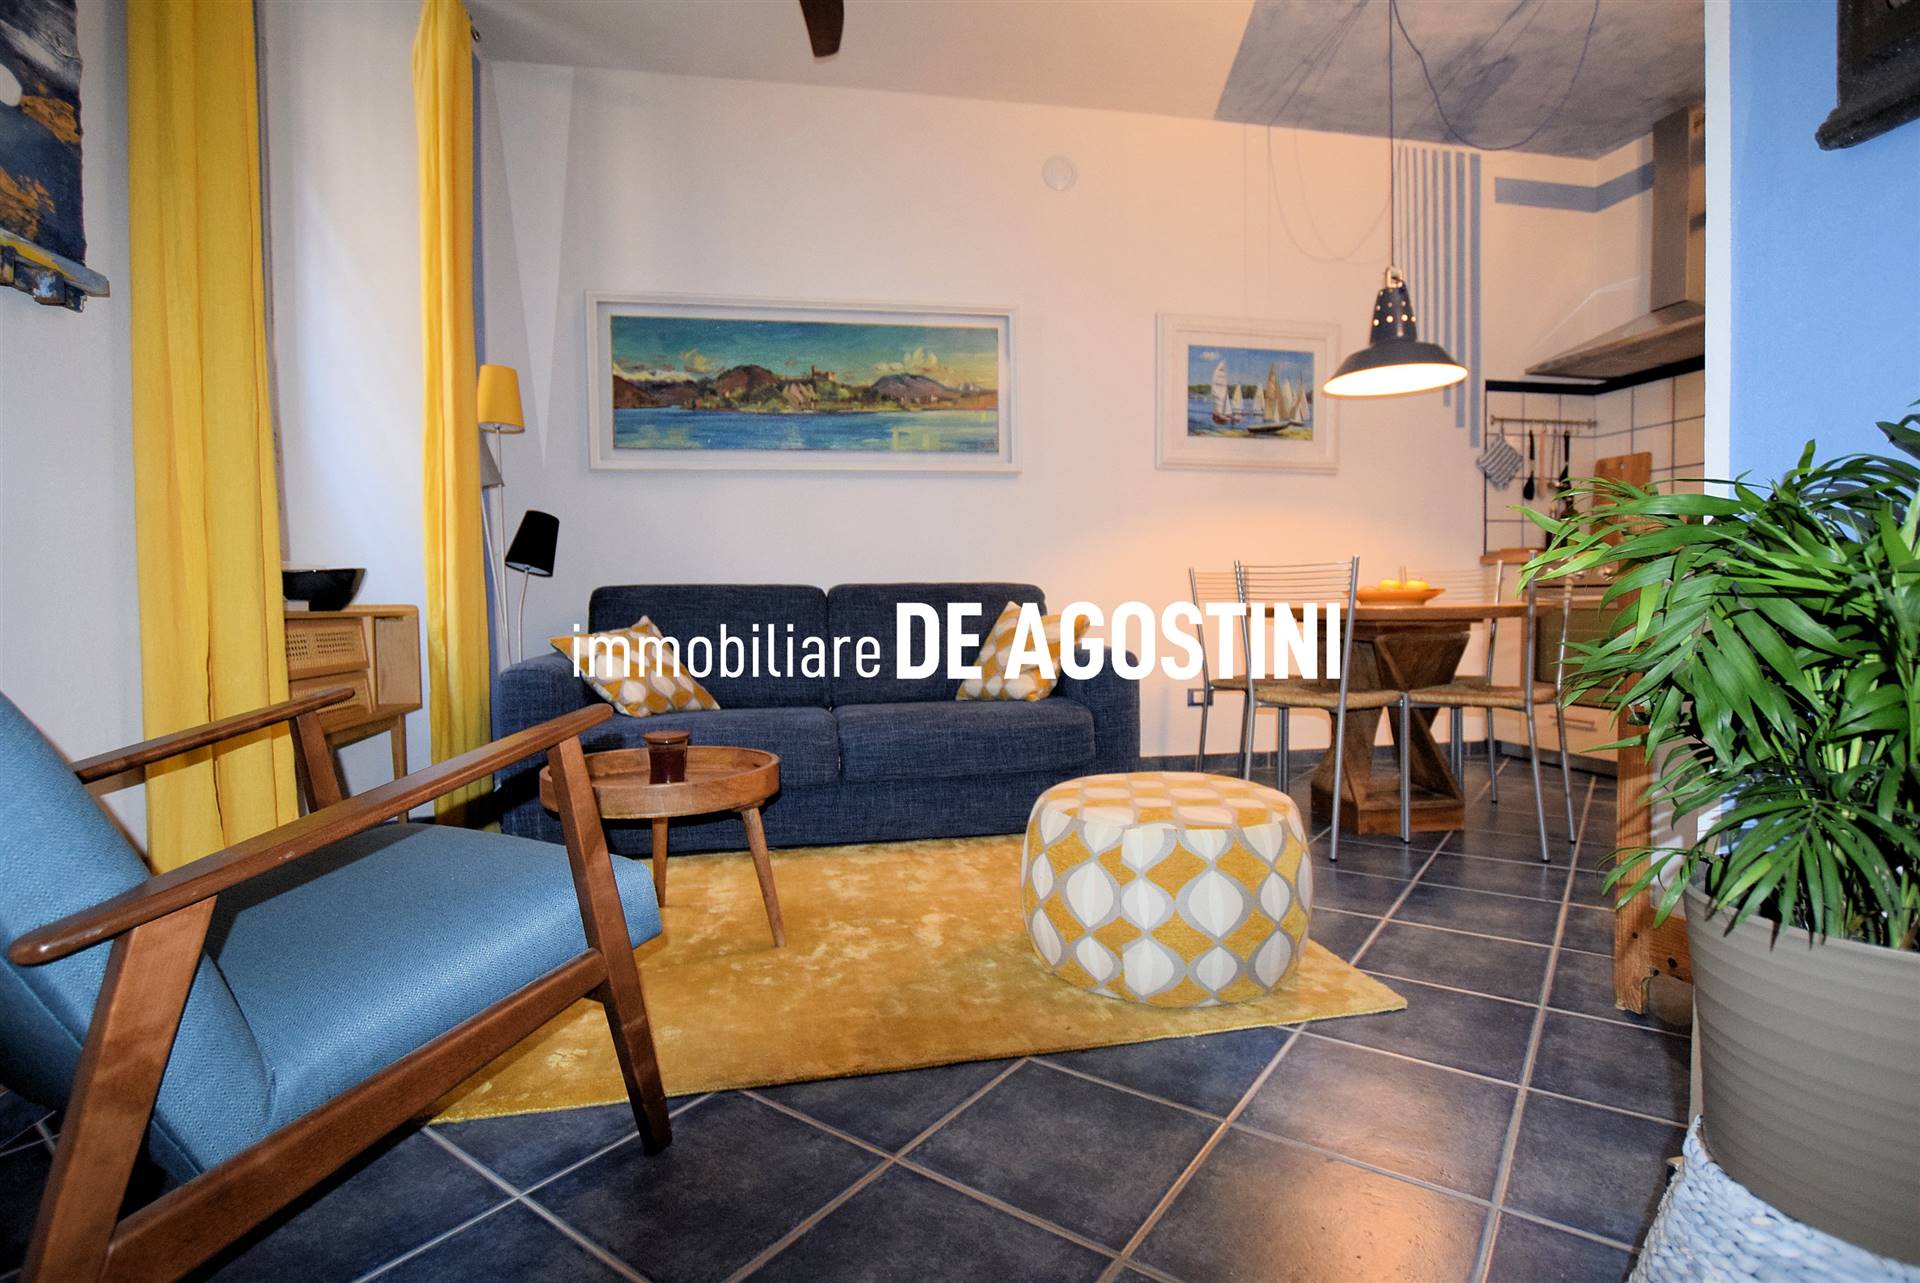 Appartamento in affitto a Arona, 2 locali, prezzo € 700 | CambioCasa.it